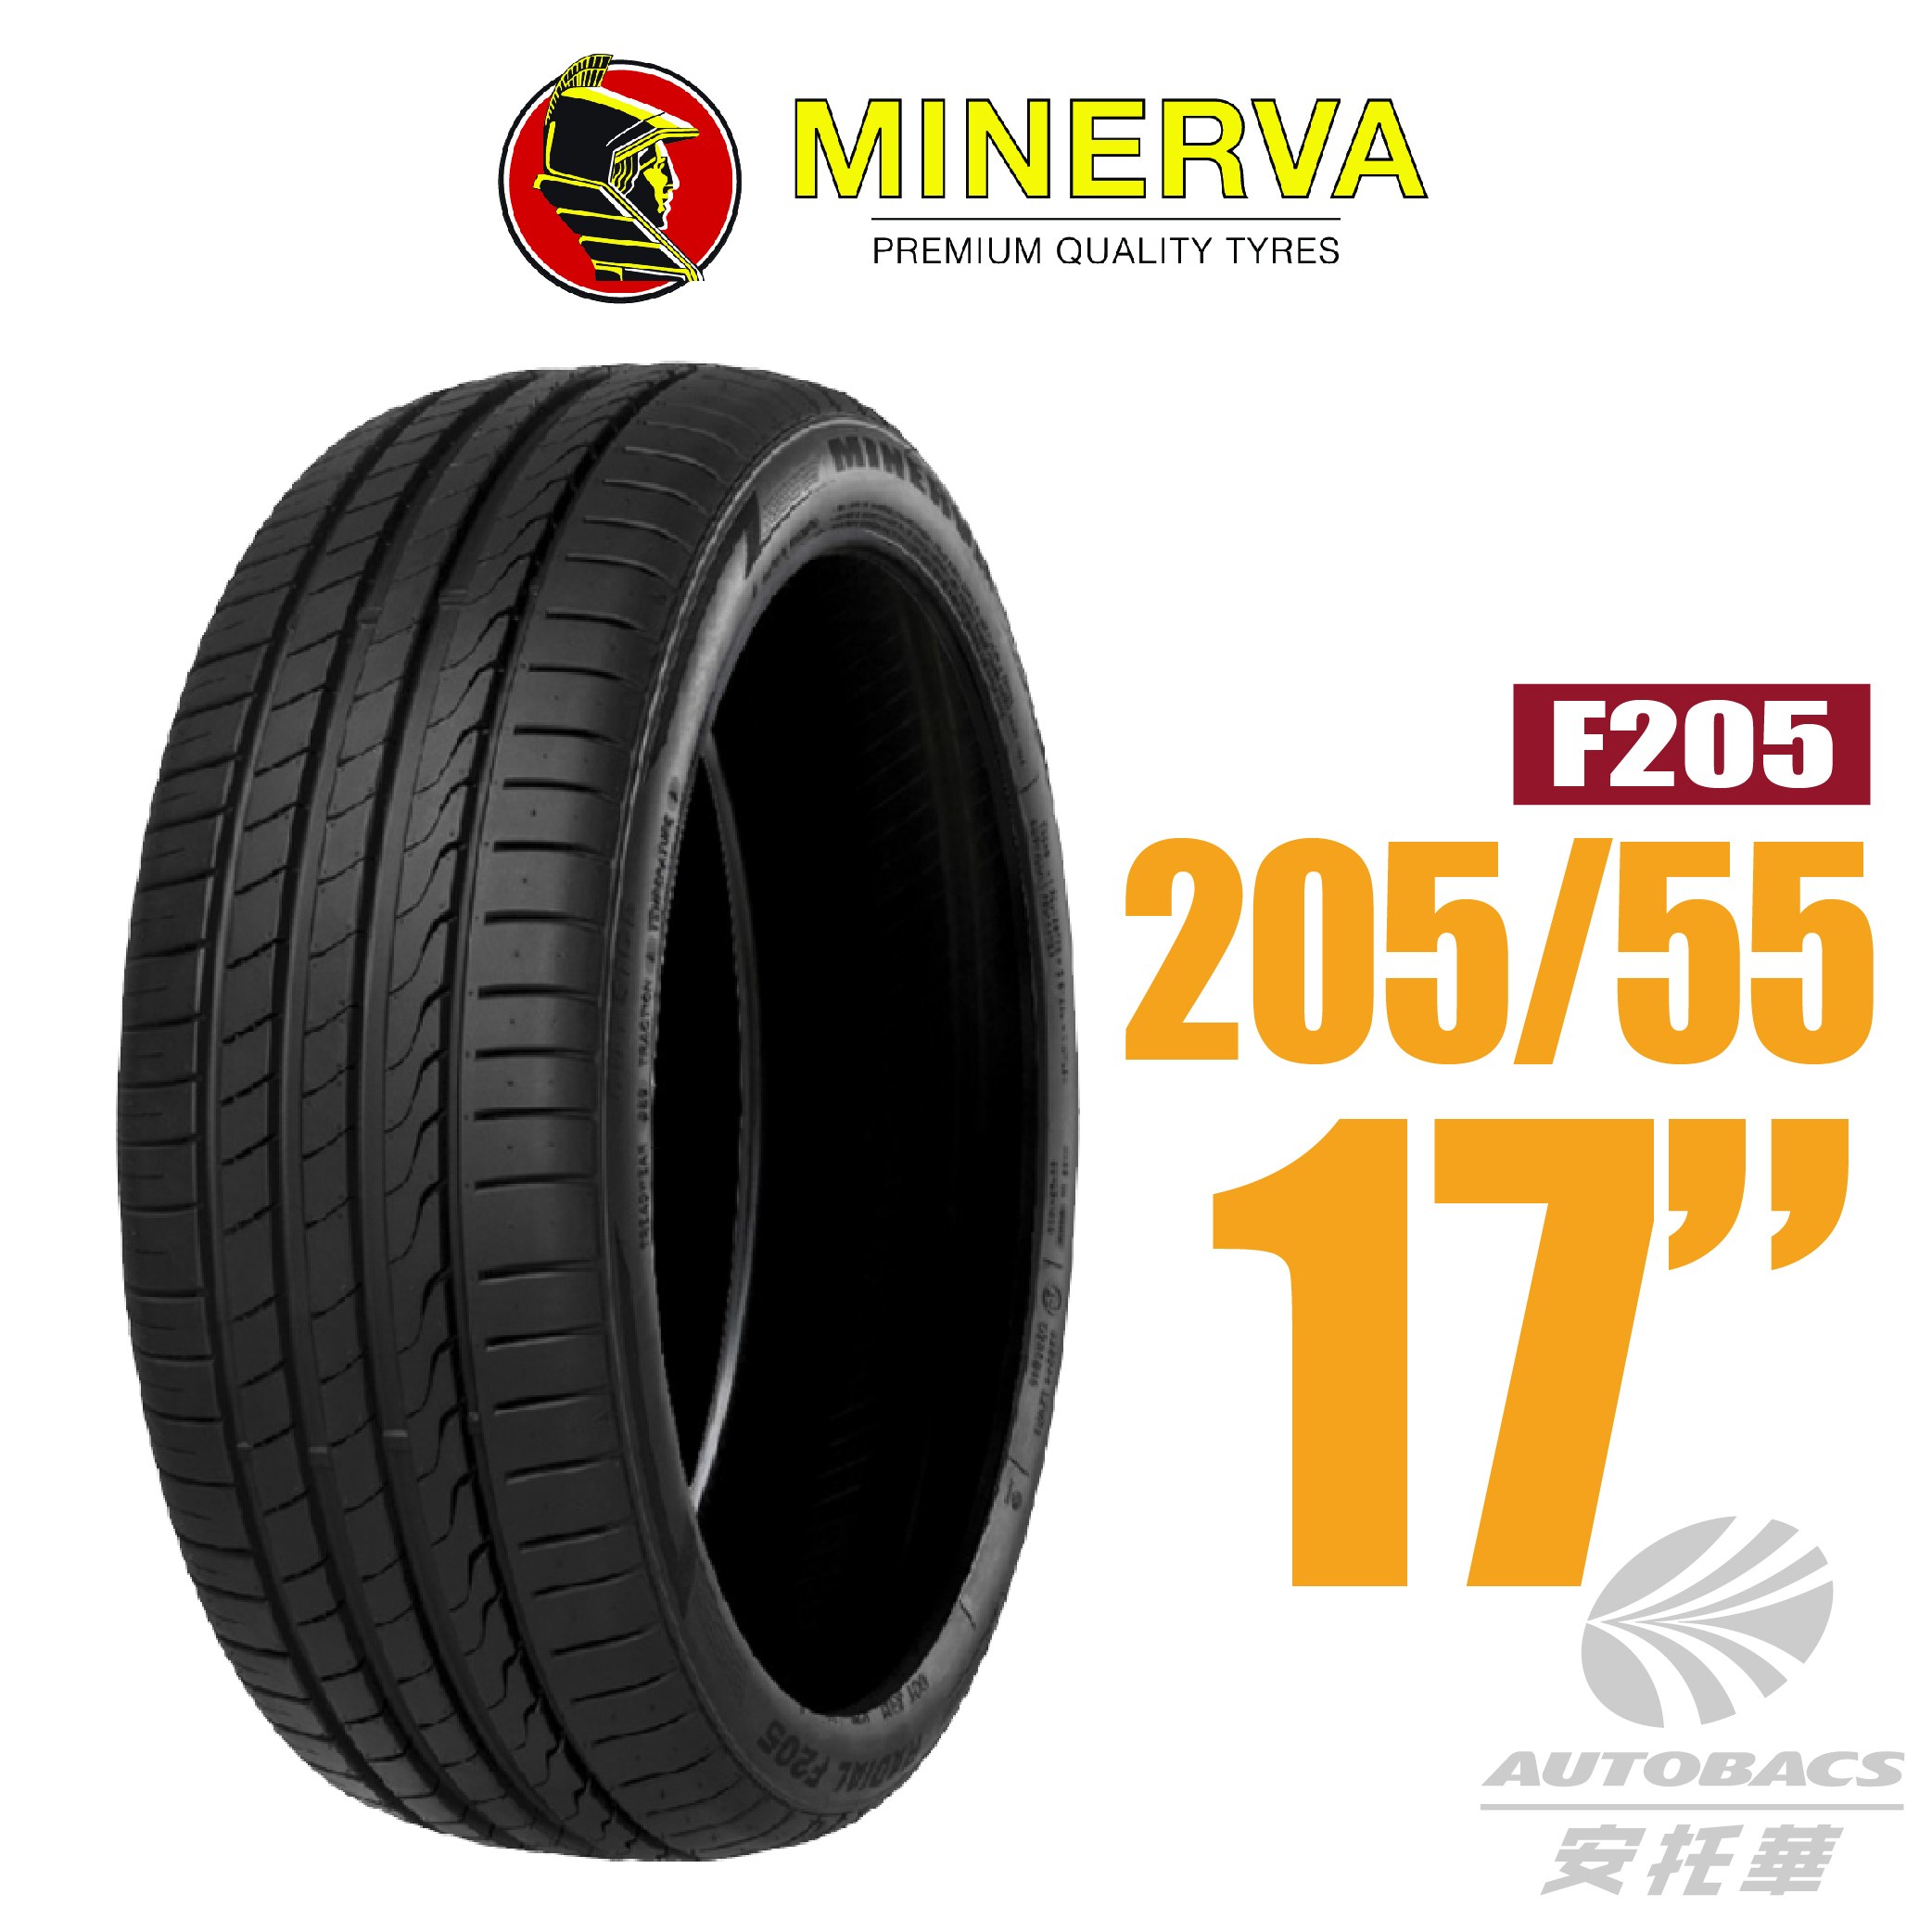 【MINERVA 米納瓦】輪胎F205-205/55/17 低噪/排水/運動/操控/轎車跑胎一入